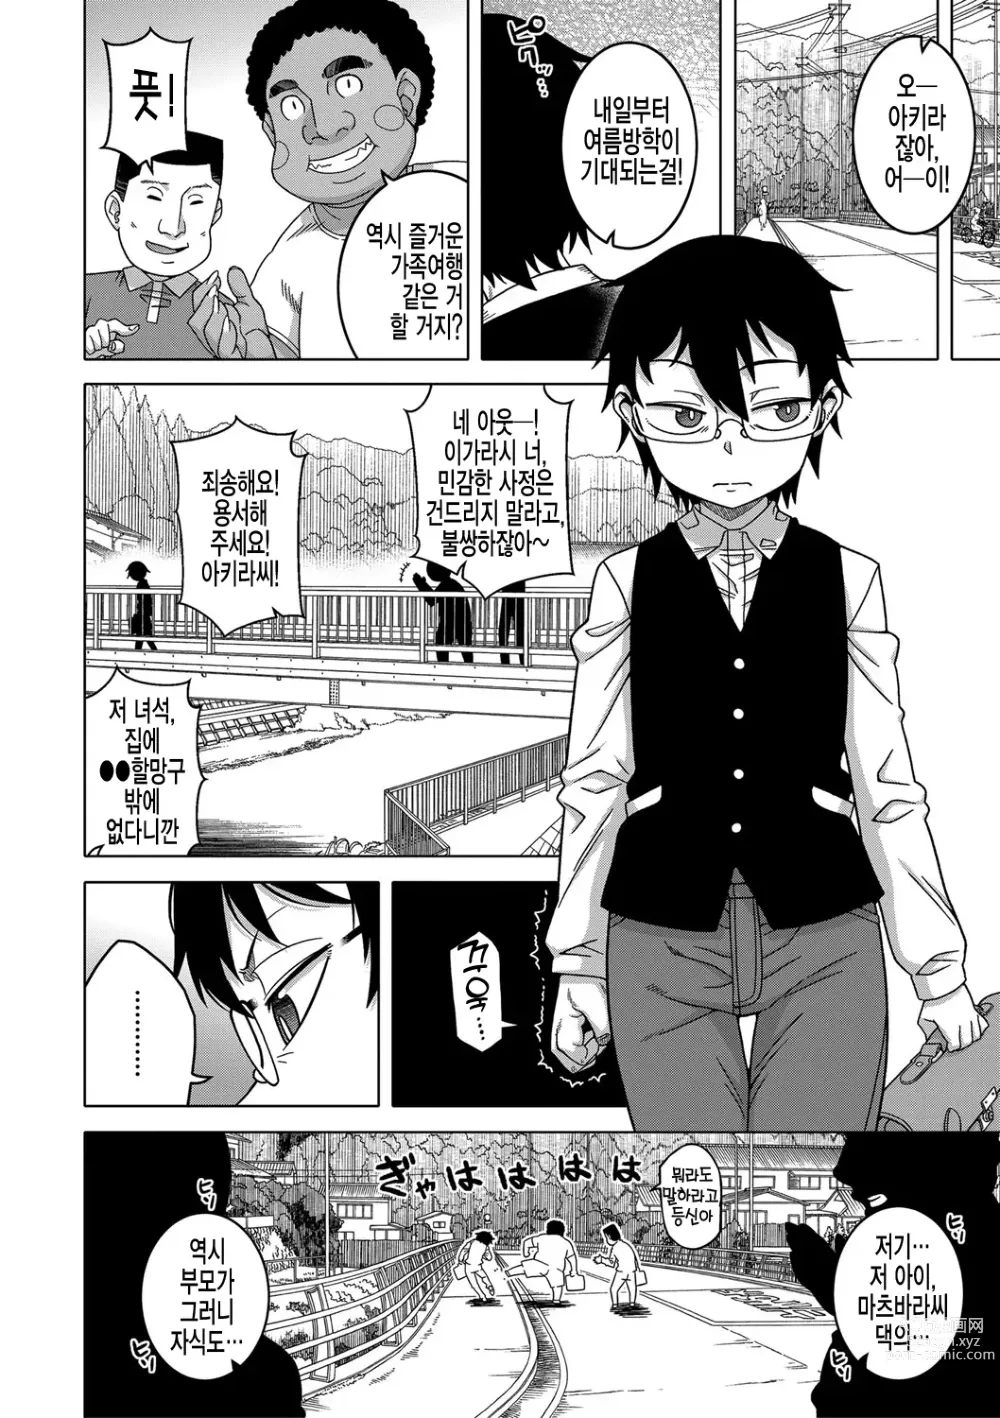 Page 6 of manga  교주님을 만드는 법